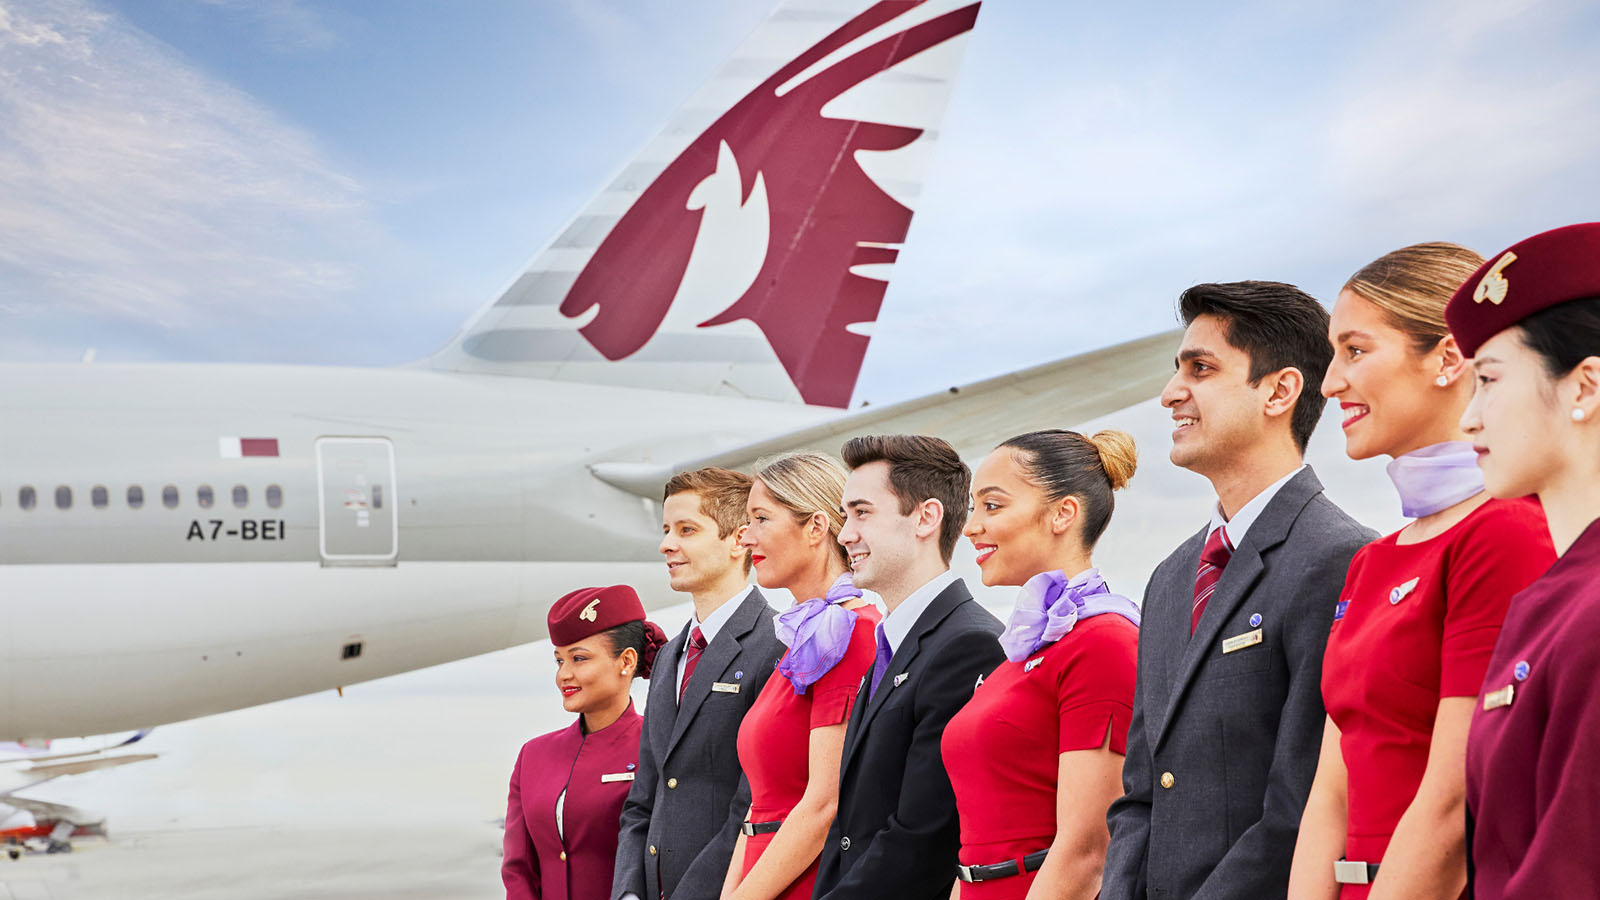 Virgin Australia and Qatar Airways cabin crew next to Qatar Airways aircraft